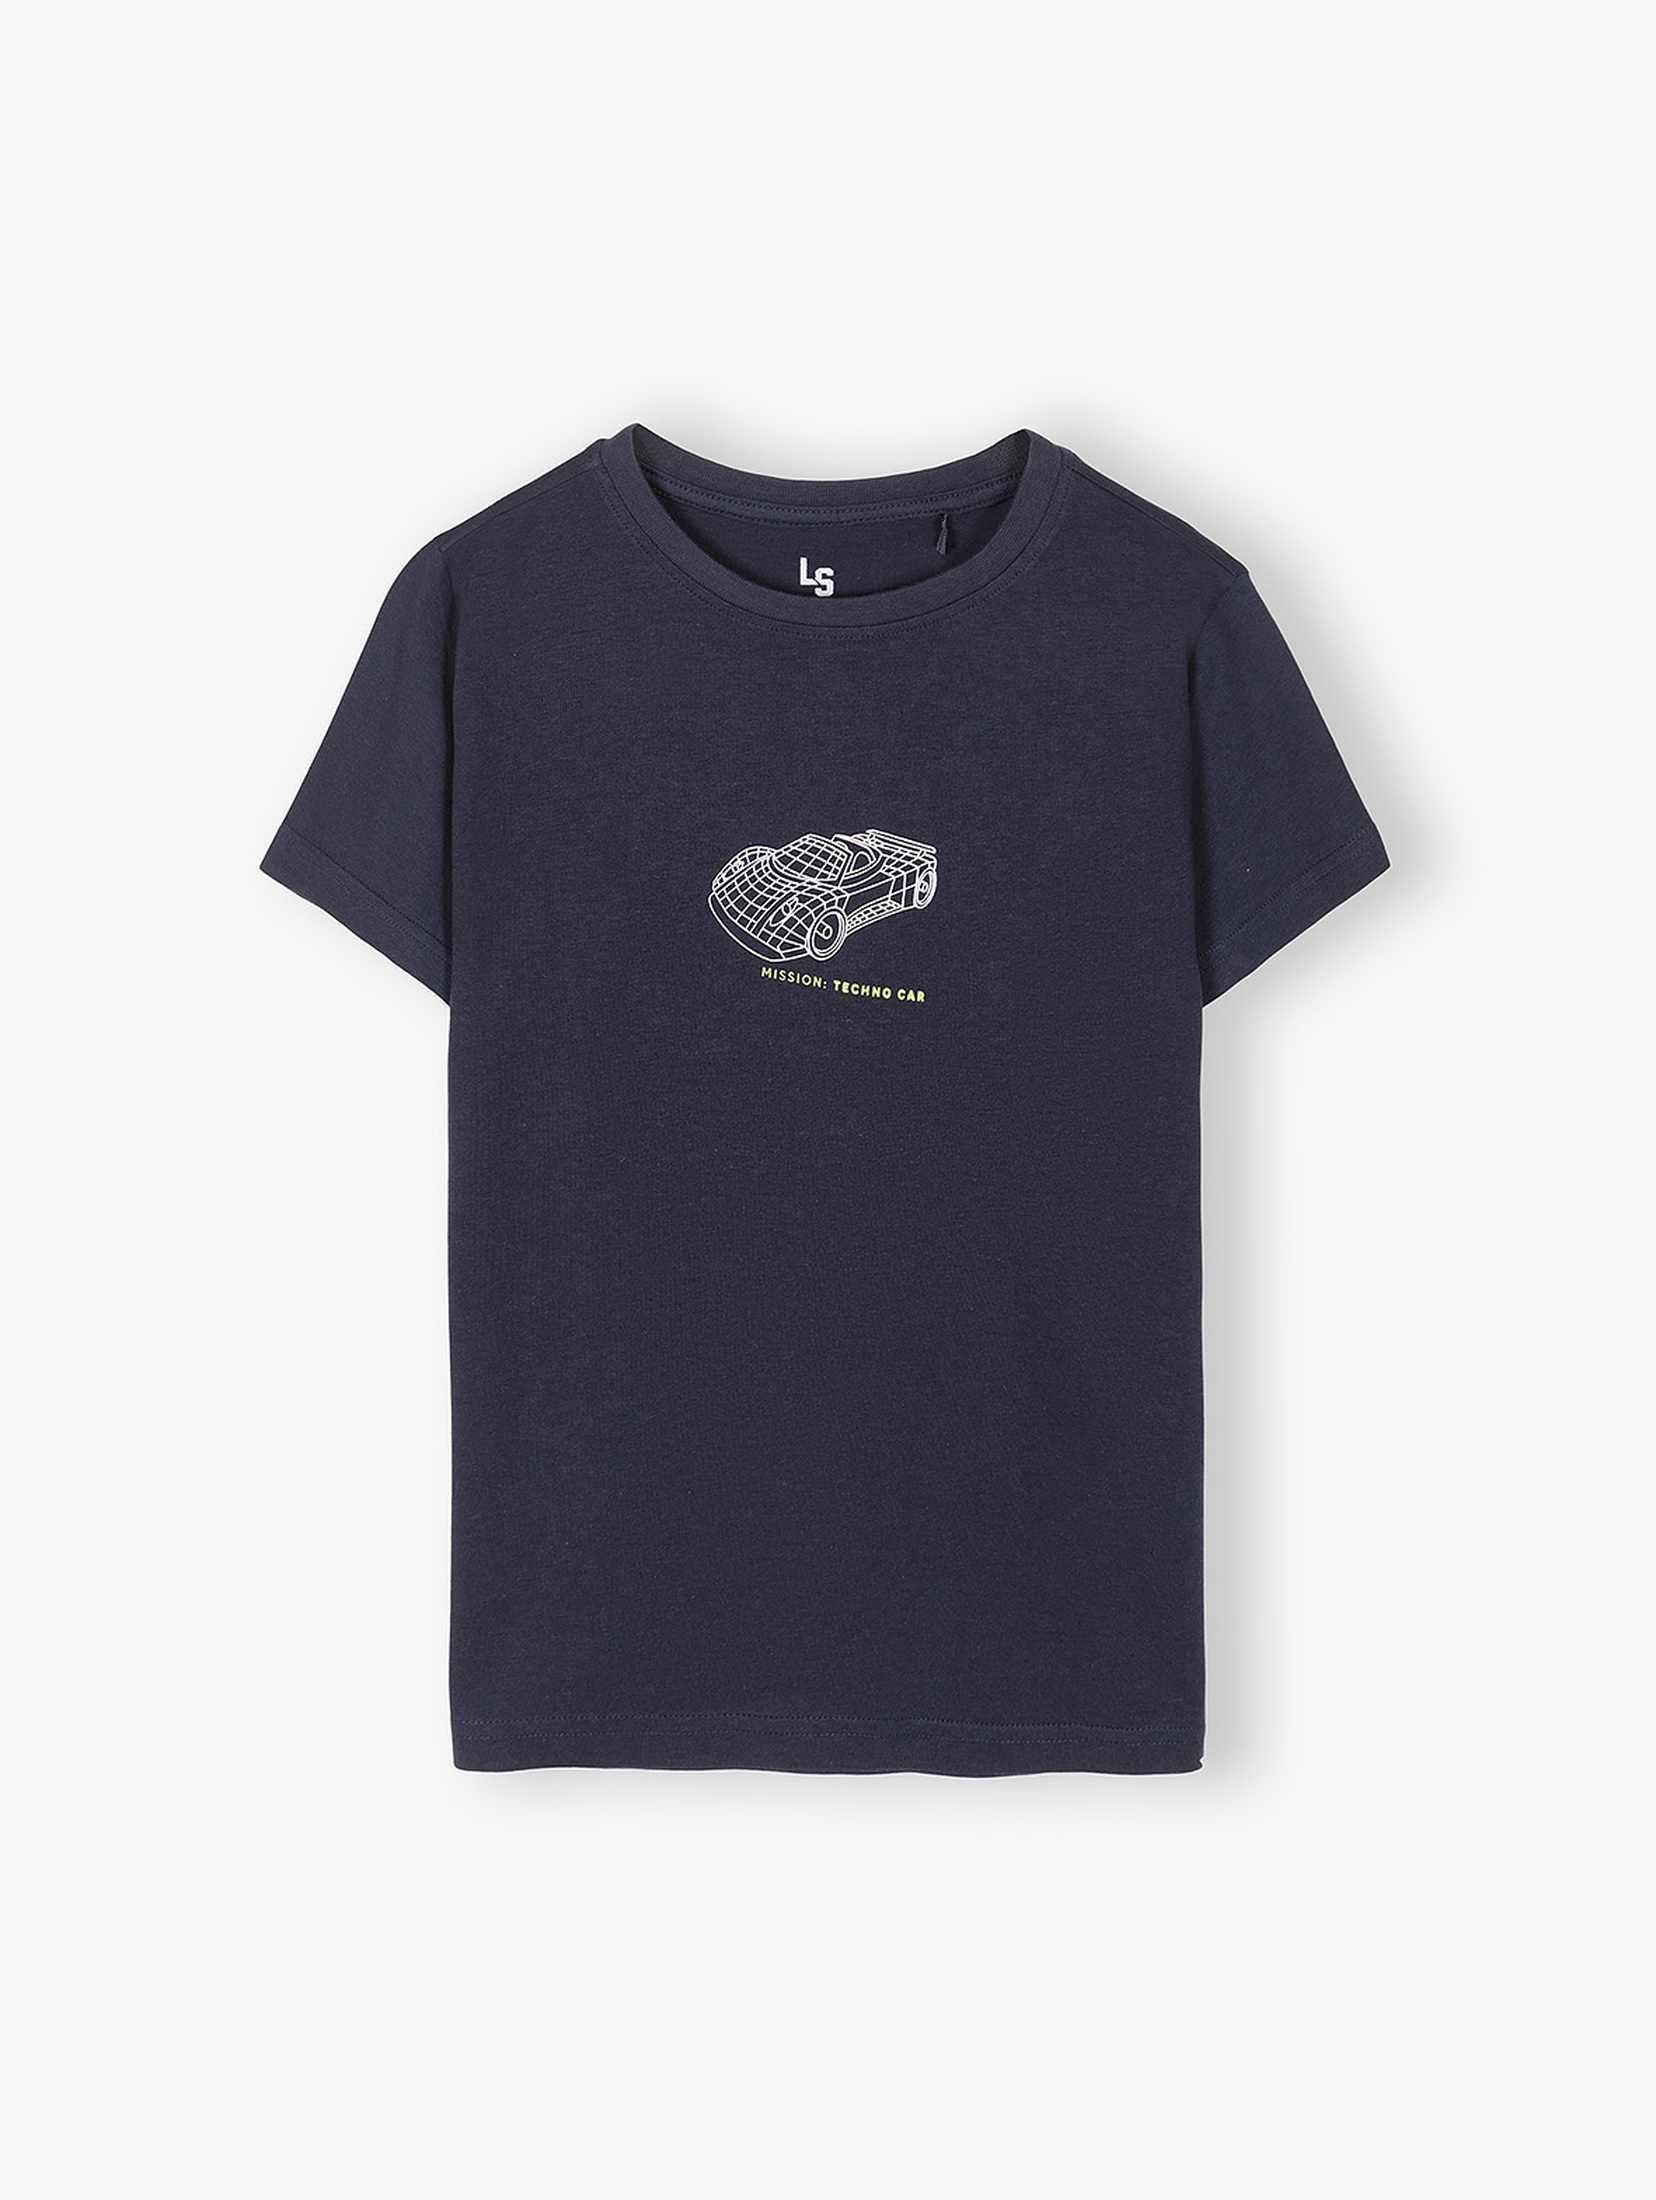 Granatowy t-shirt dla chłopca bawełniany z nadrukiem